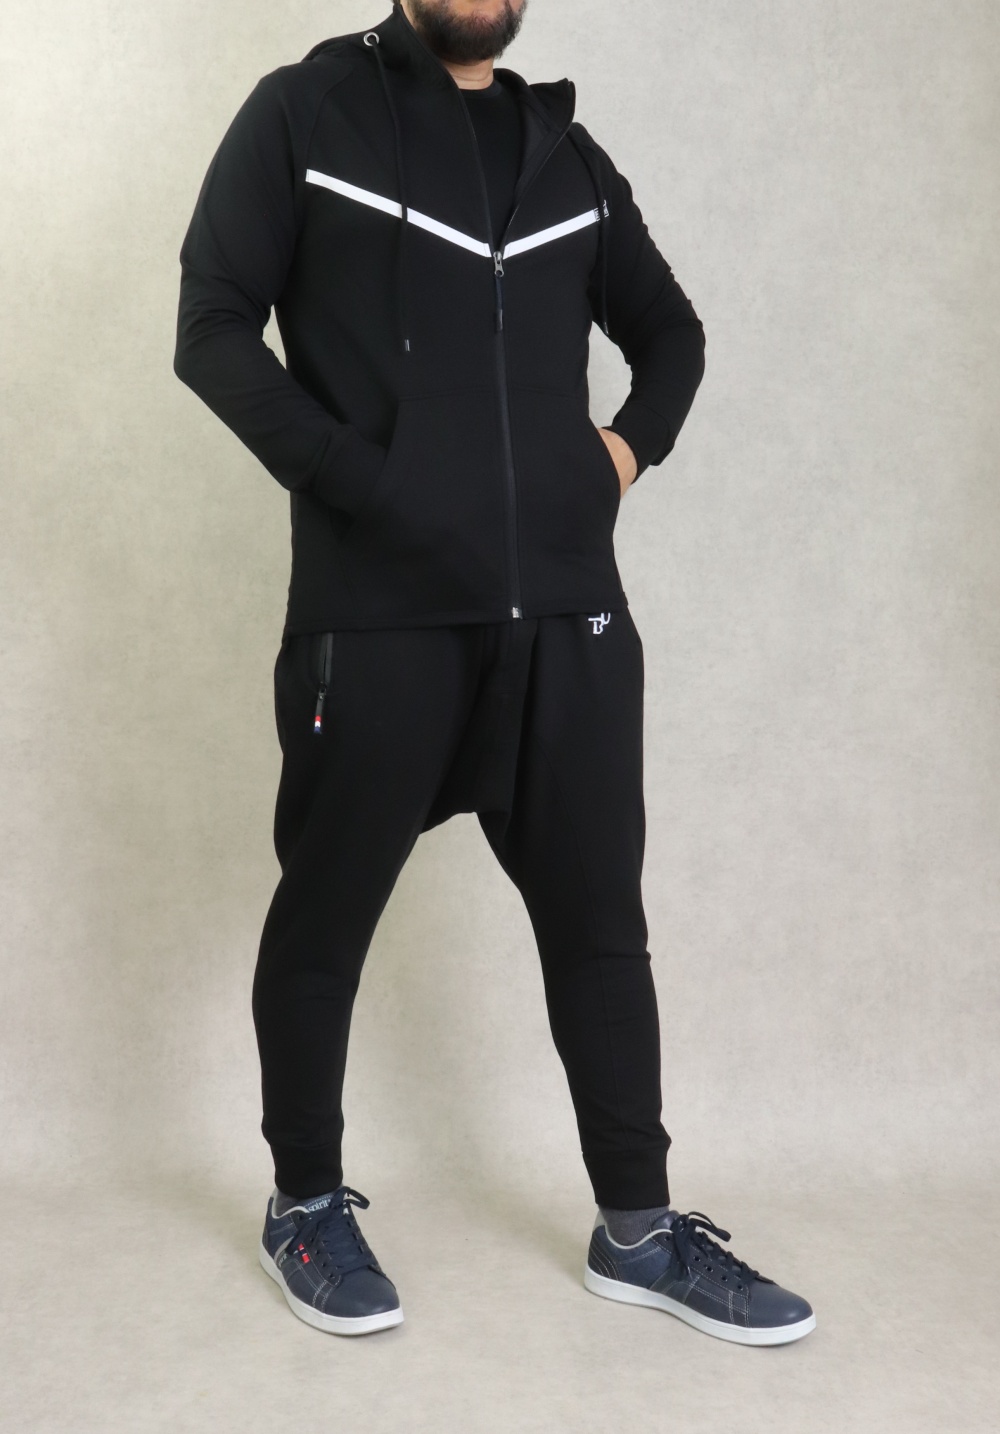 Ensemble survêtement jogging homme Noir et Blanc (Marque Best Ummah) - Prêt  à porter et accessoires sur